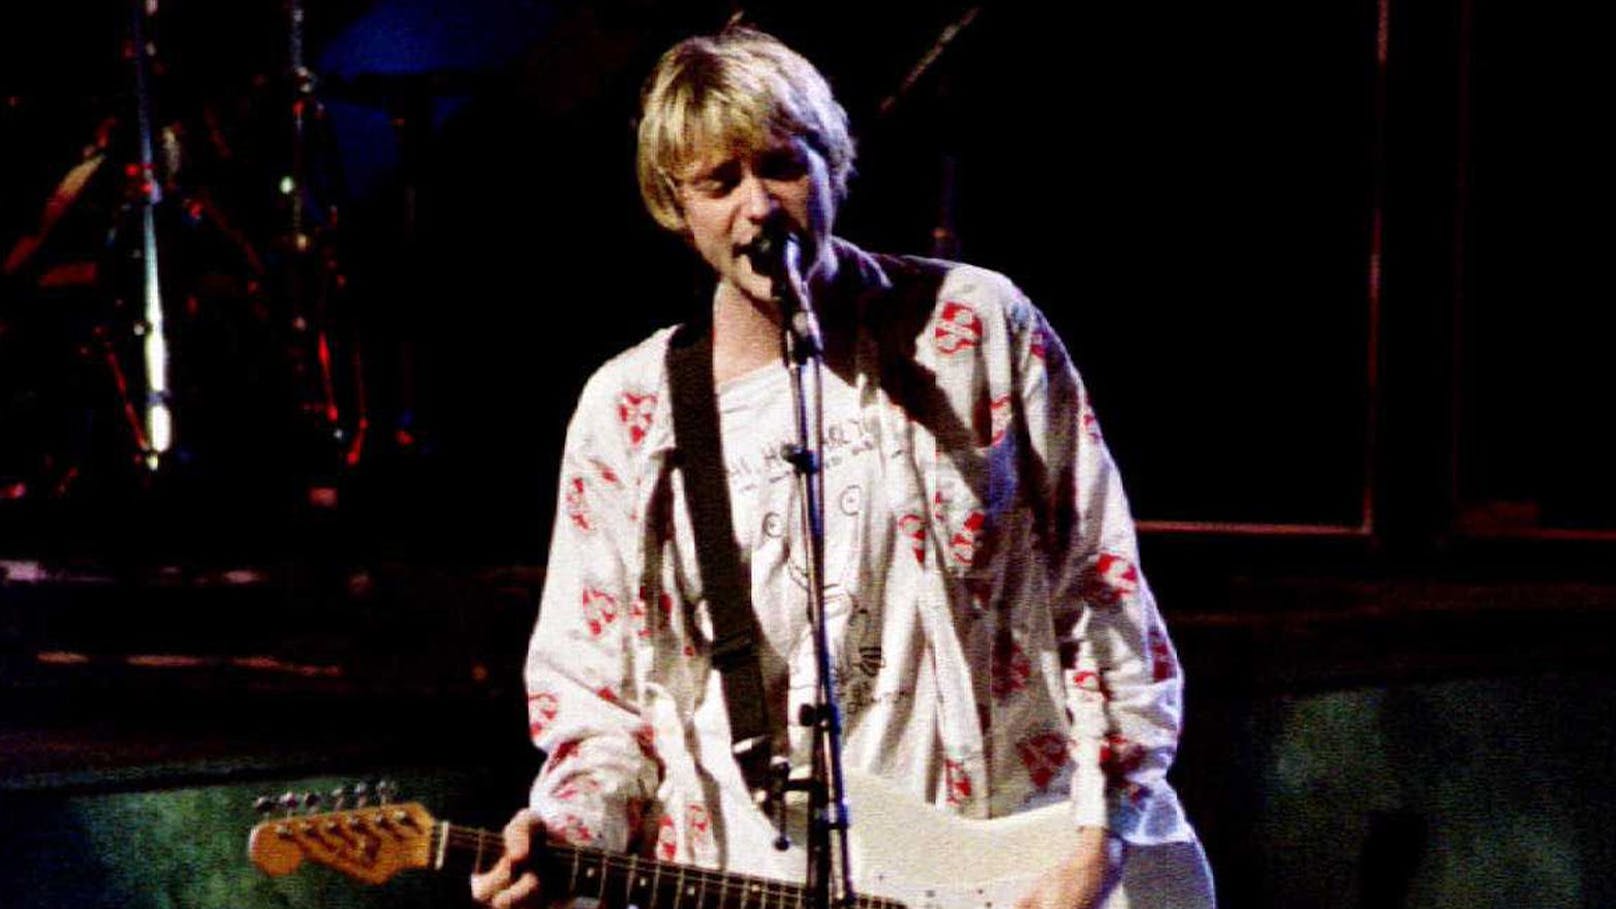 Doku zeigt unveröffentlichtes Material von Kurt Cobain